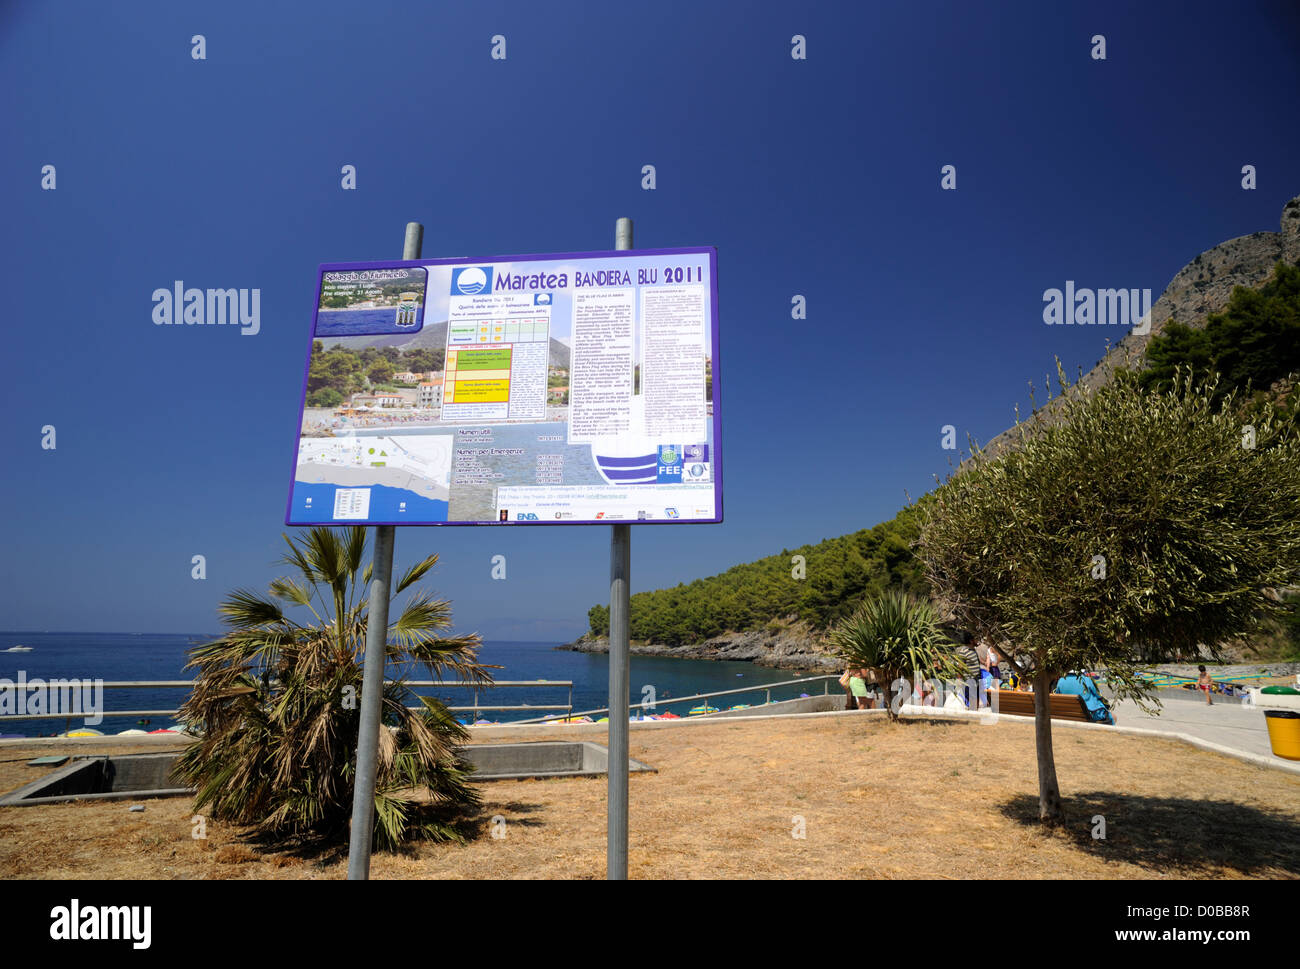 Italien, Basilicata, Maratea, Strand Fiumicello, Schild „Bandiera blu“ (blaue Flagge für die besten Strände Italiens) Stockfoto